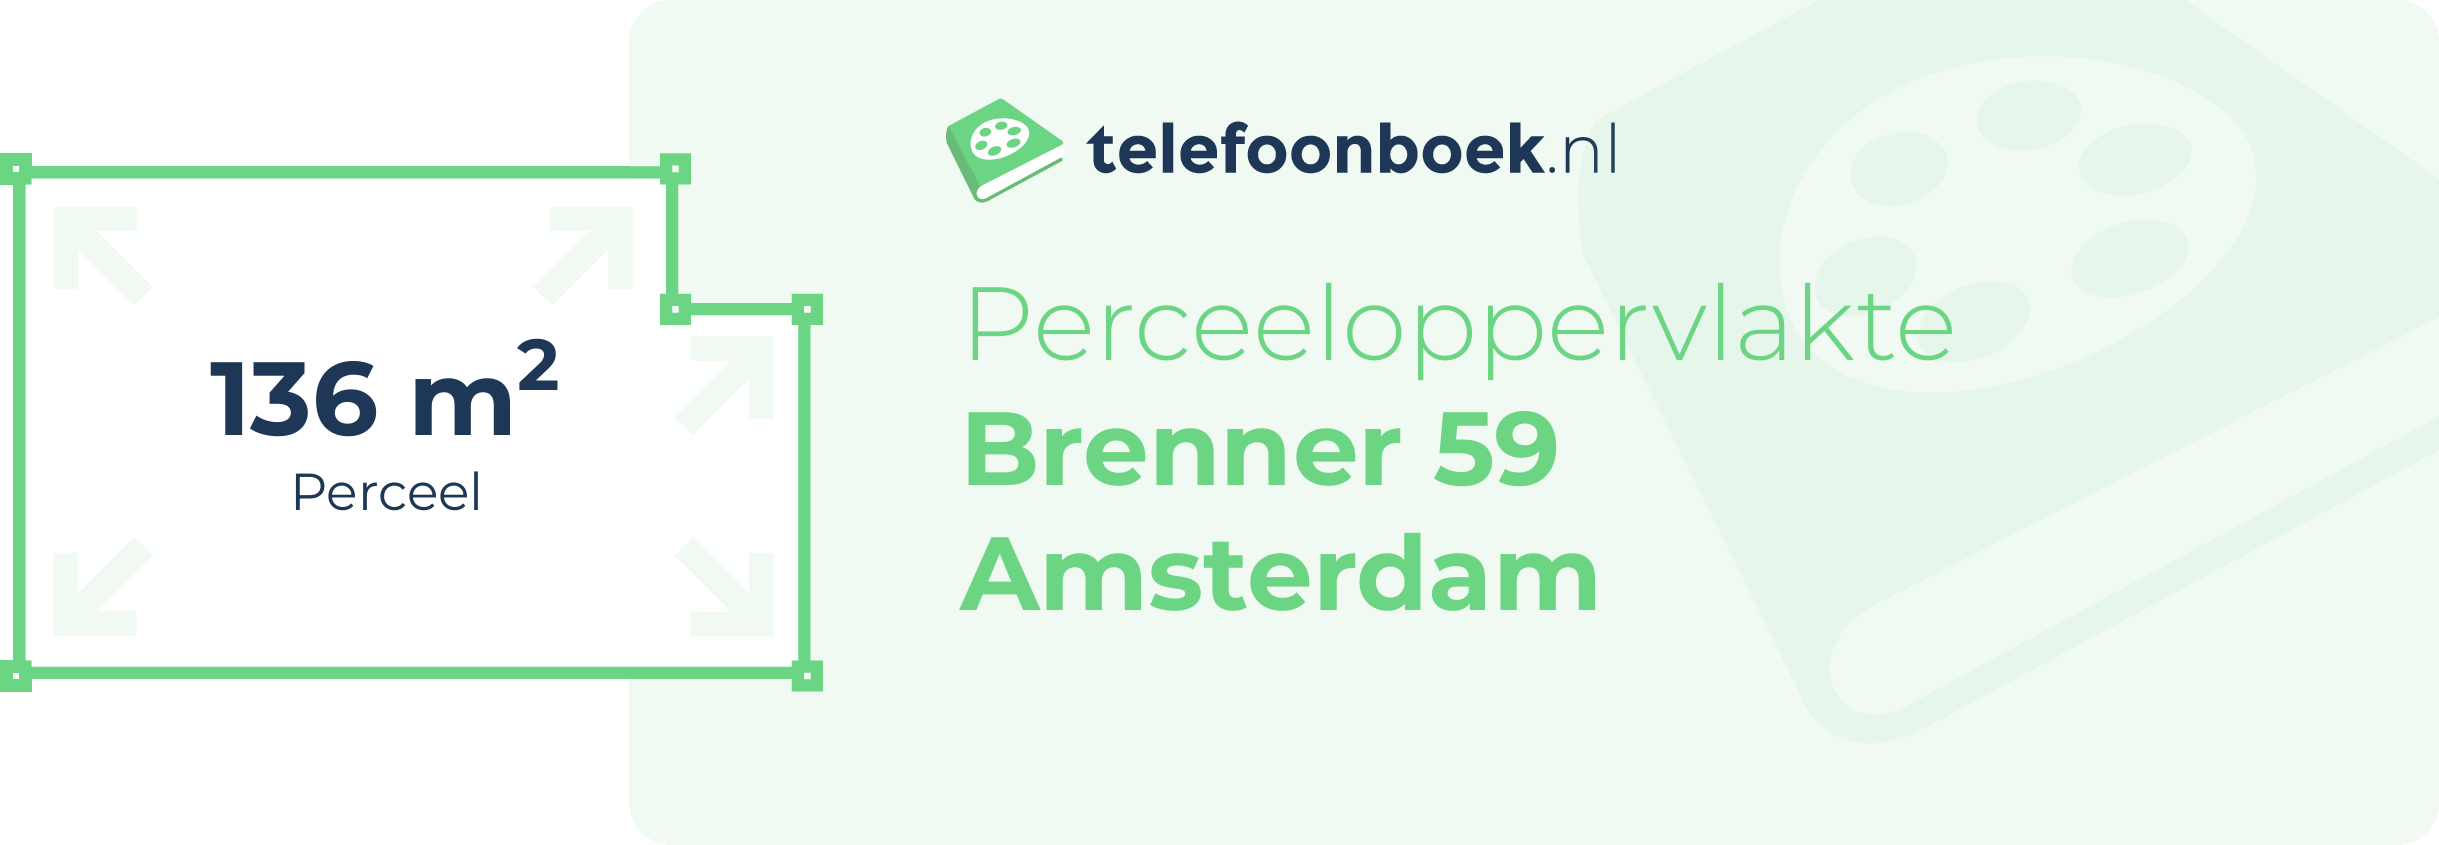 Perceeloppervlakte Brenner 59 Amsterdam